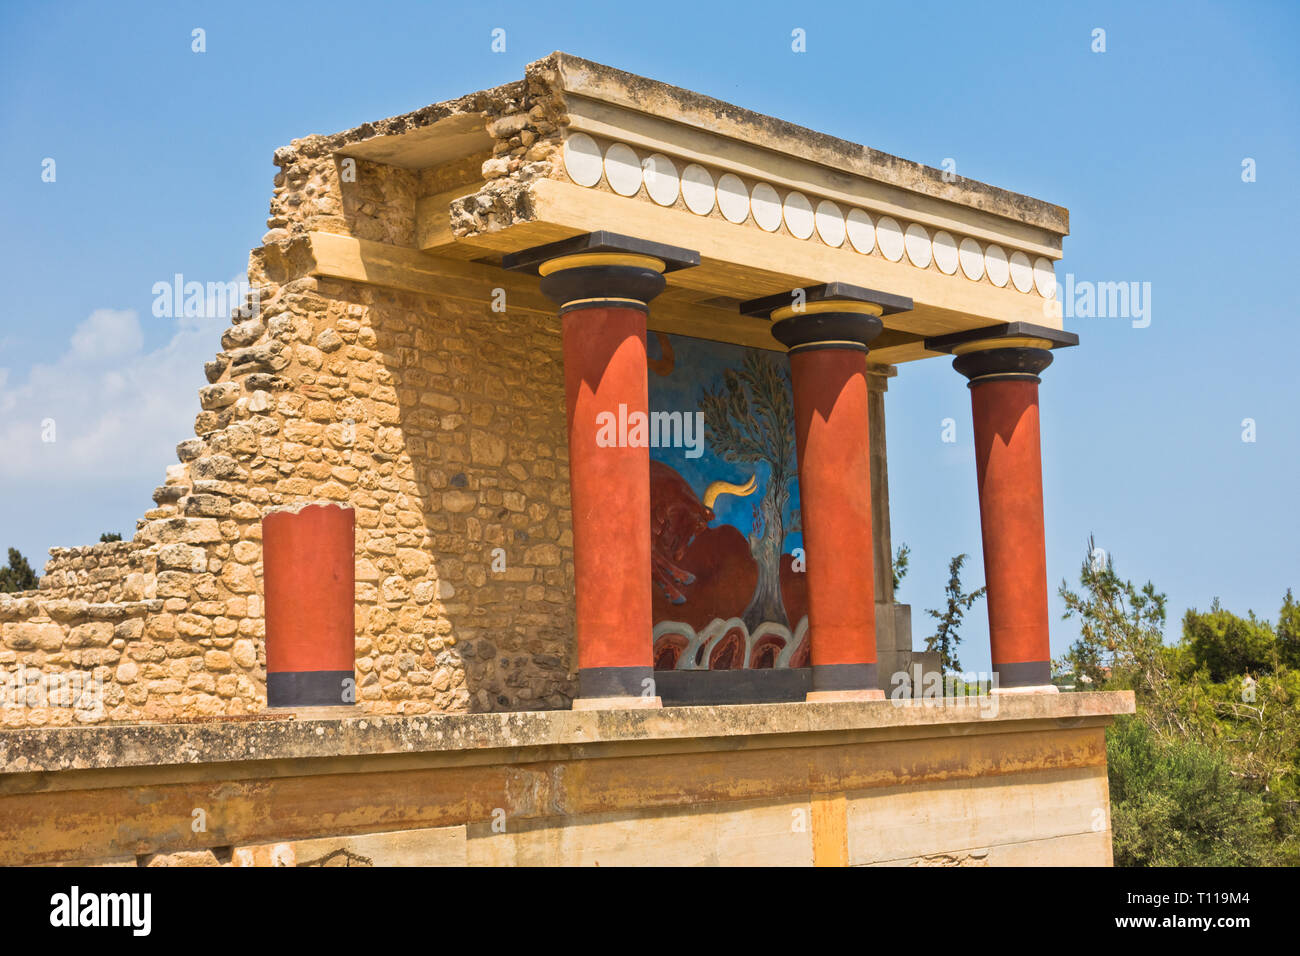 Le nord de l'entrée au Palais de Knossos décoré de fresques bull, situé près du port d'Héraklion, île de Crète, Grèce Banque D'Images